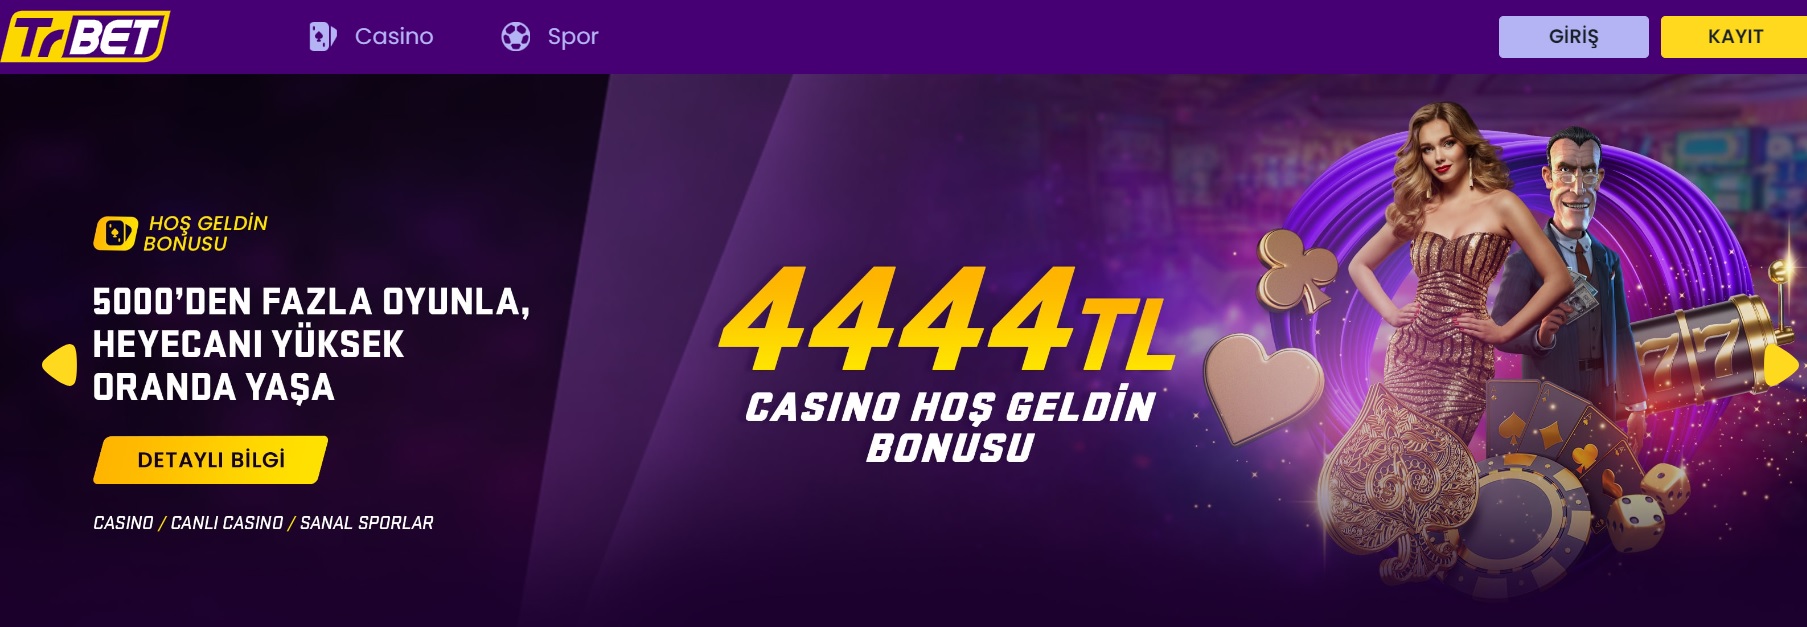 Trbet Casino Bonus